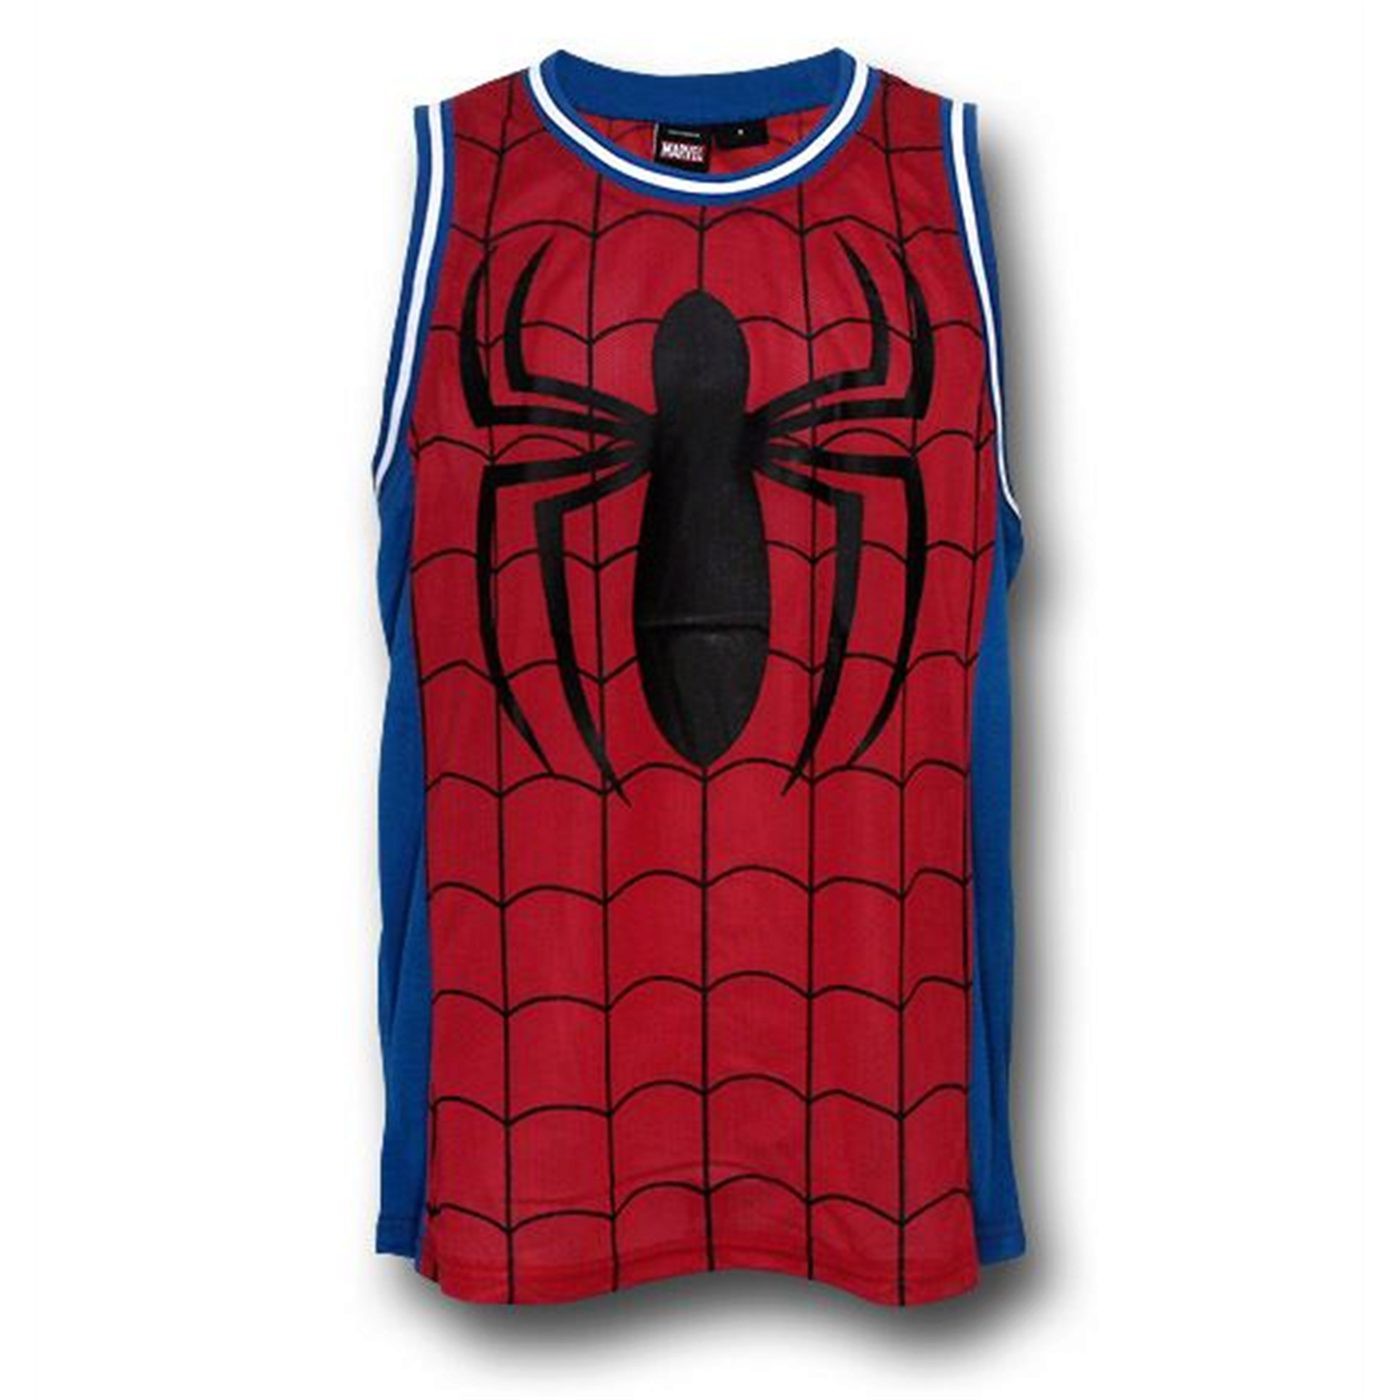 Marvel Avengers Spiderman Basketball Jersey Summer Sleeveless